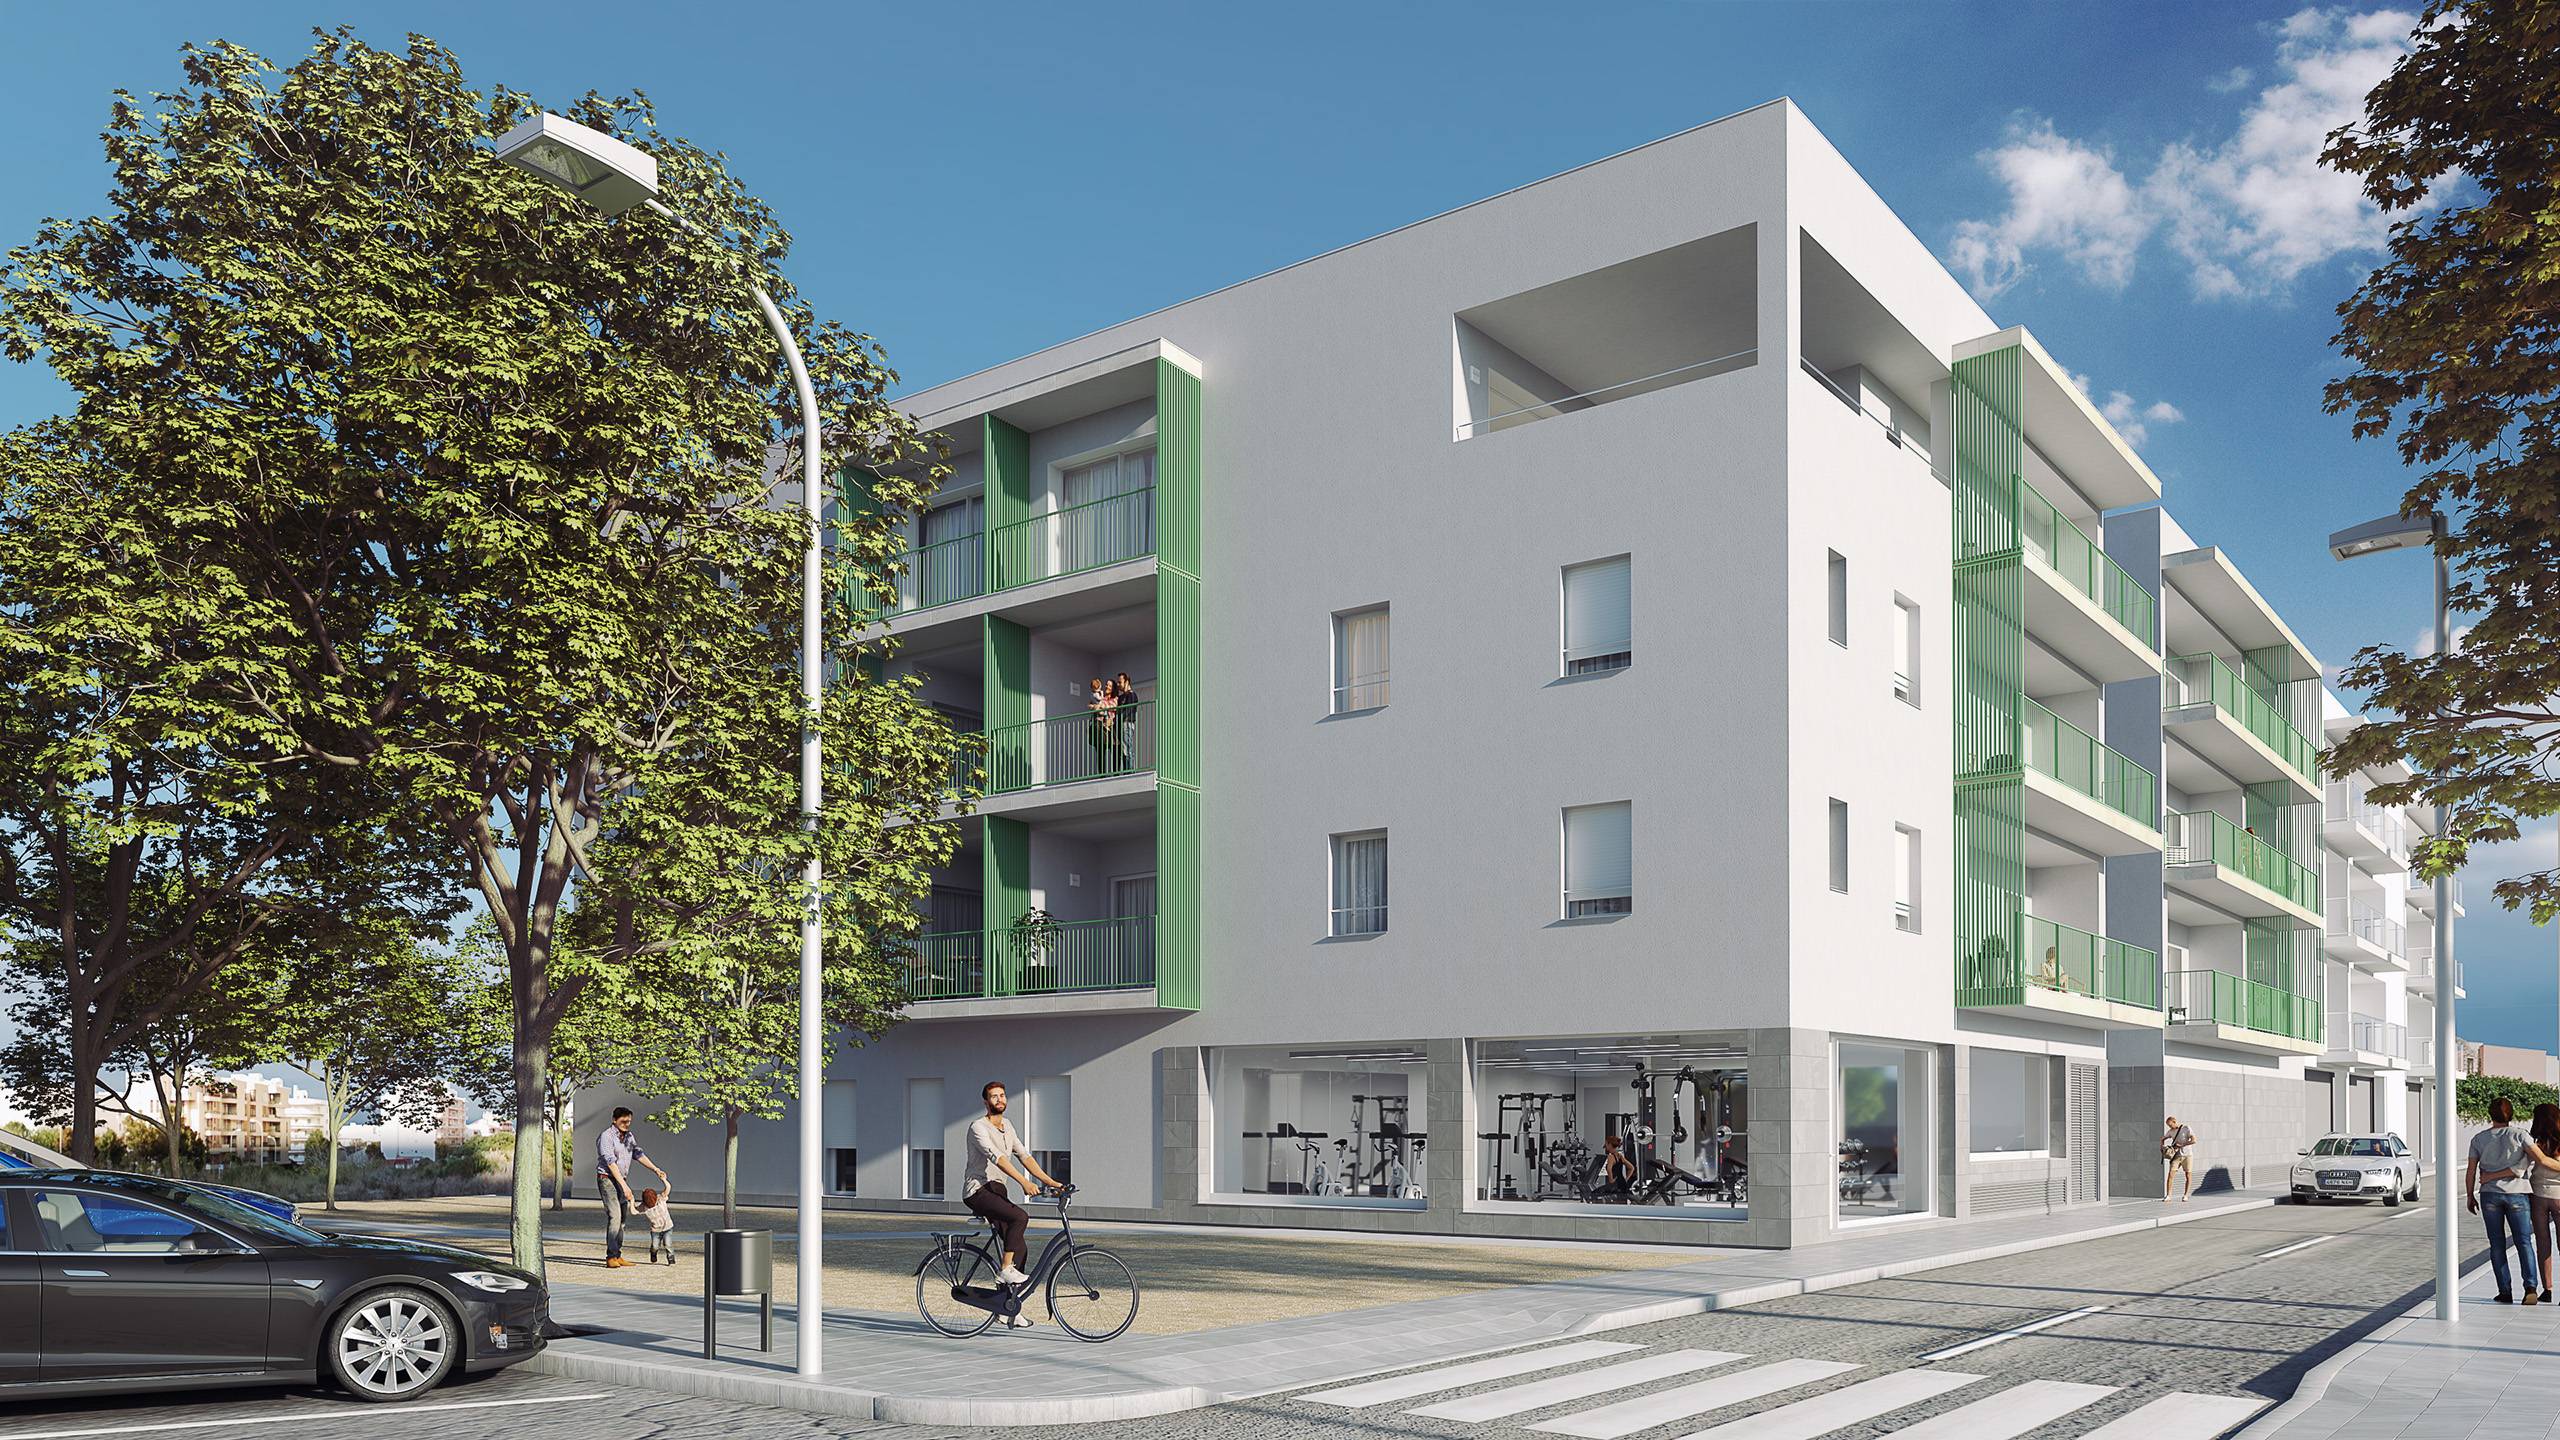 Promozioni - Exciting new development in residential area in Mahon, Menorca